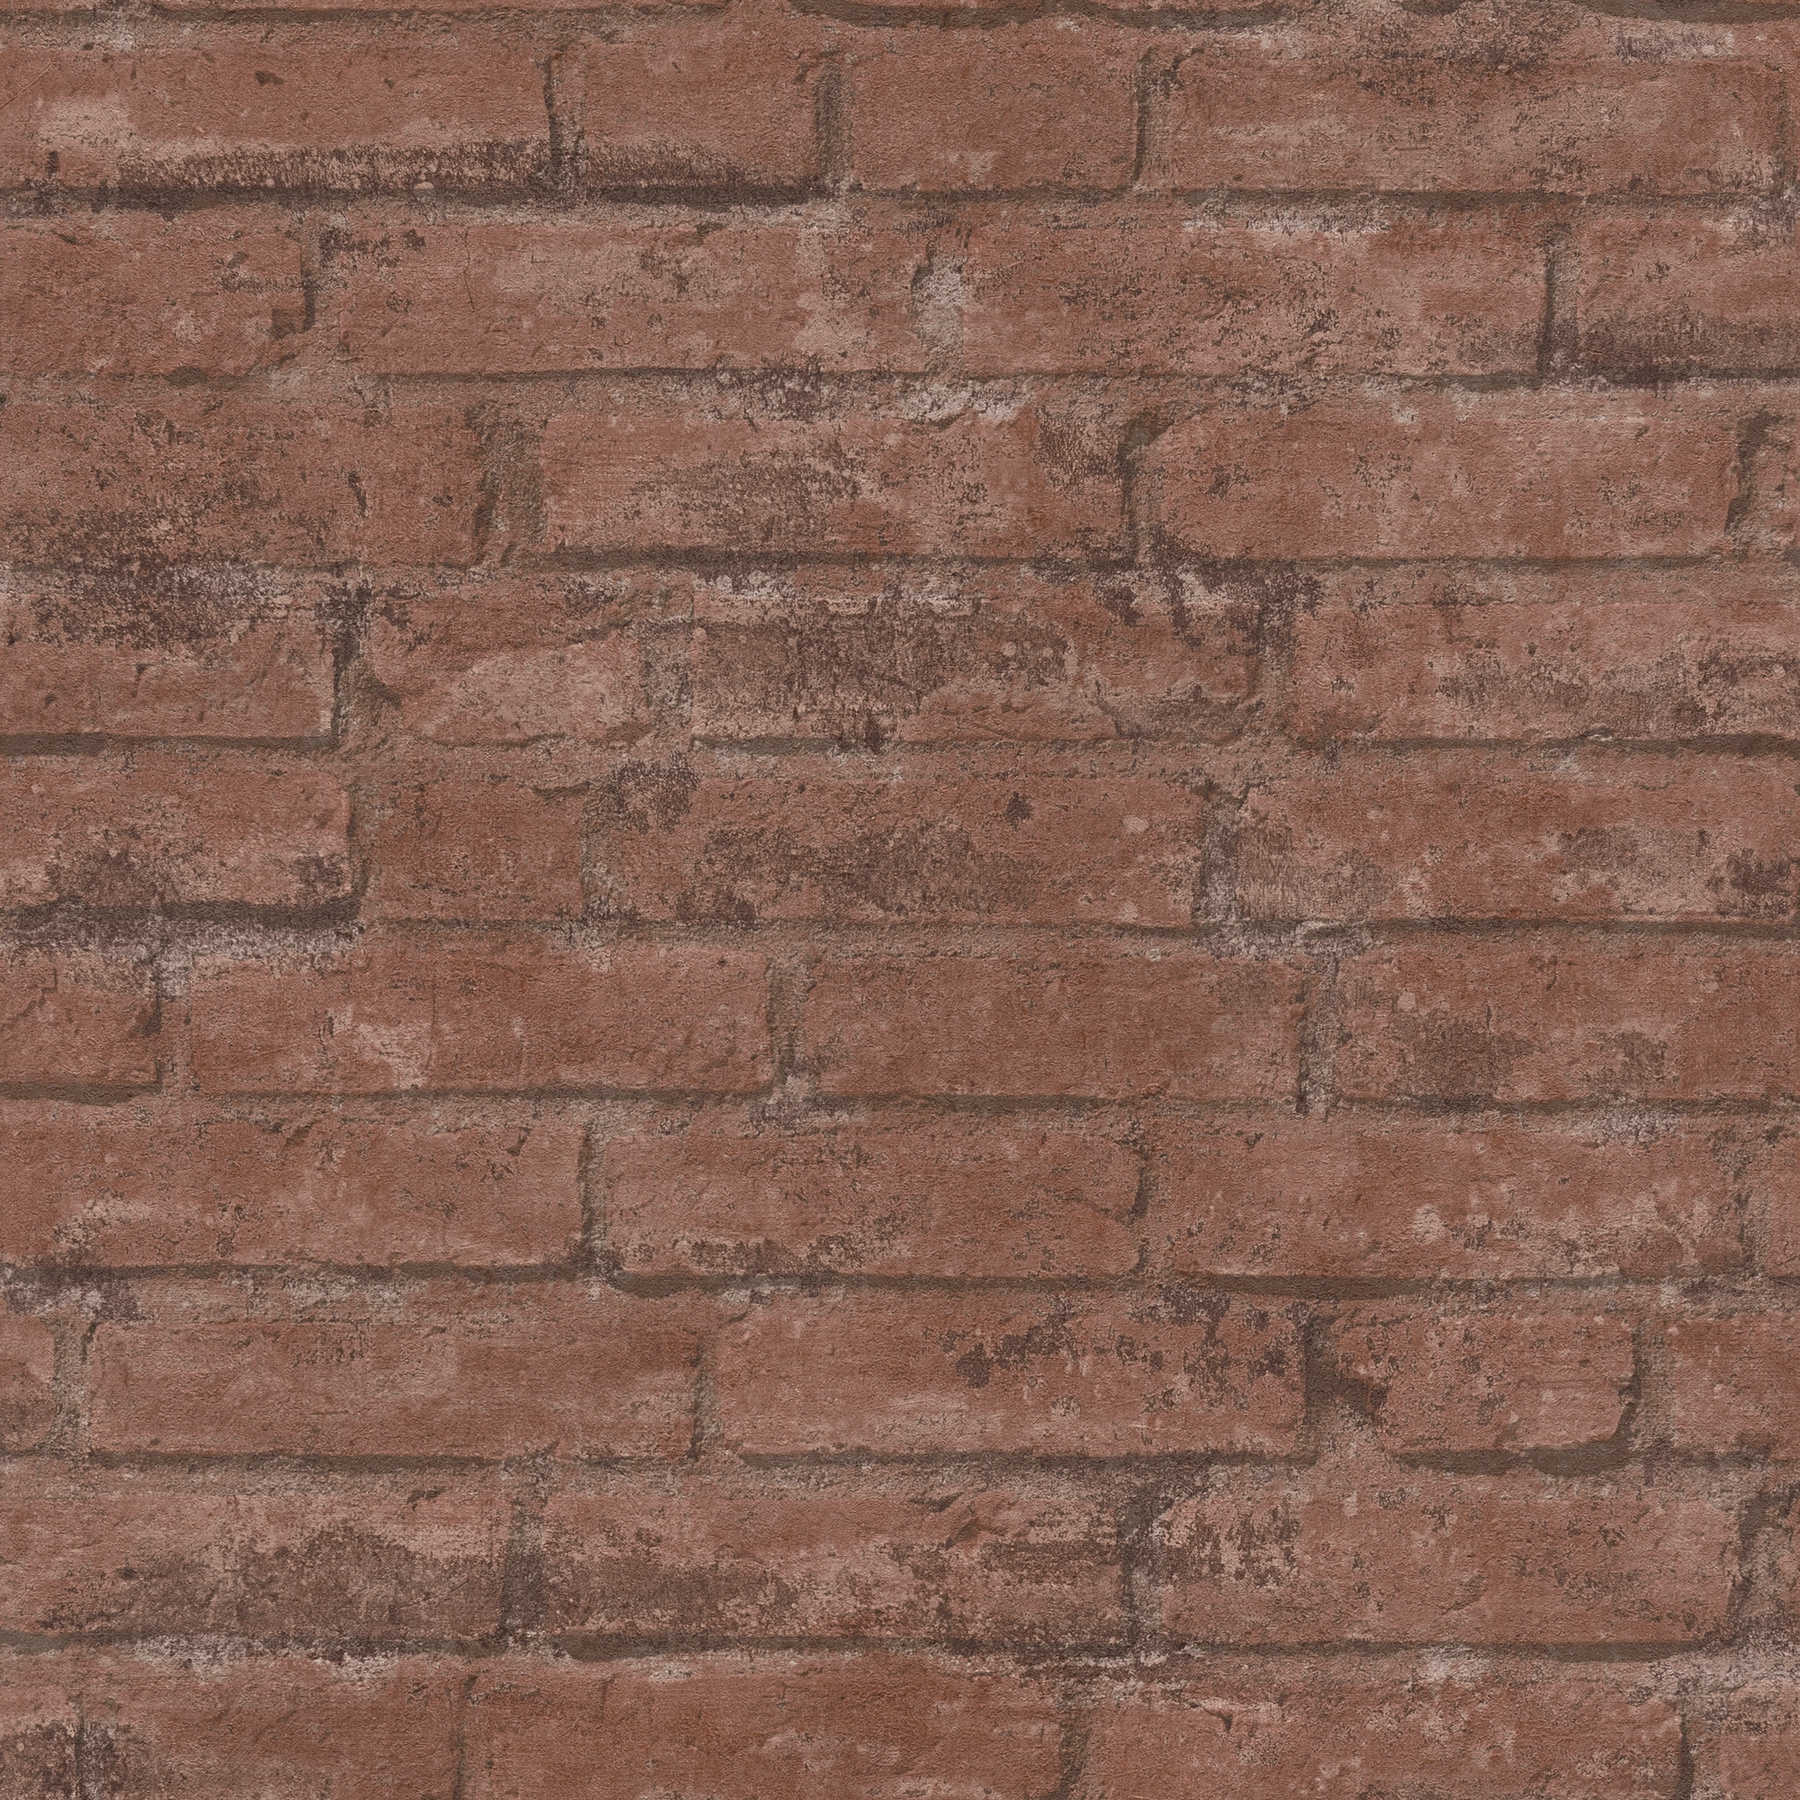 Papier peint pierre aspect rustique mur, Industrial Design - marron, rouge
